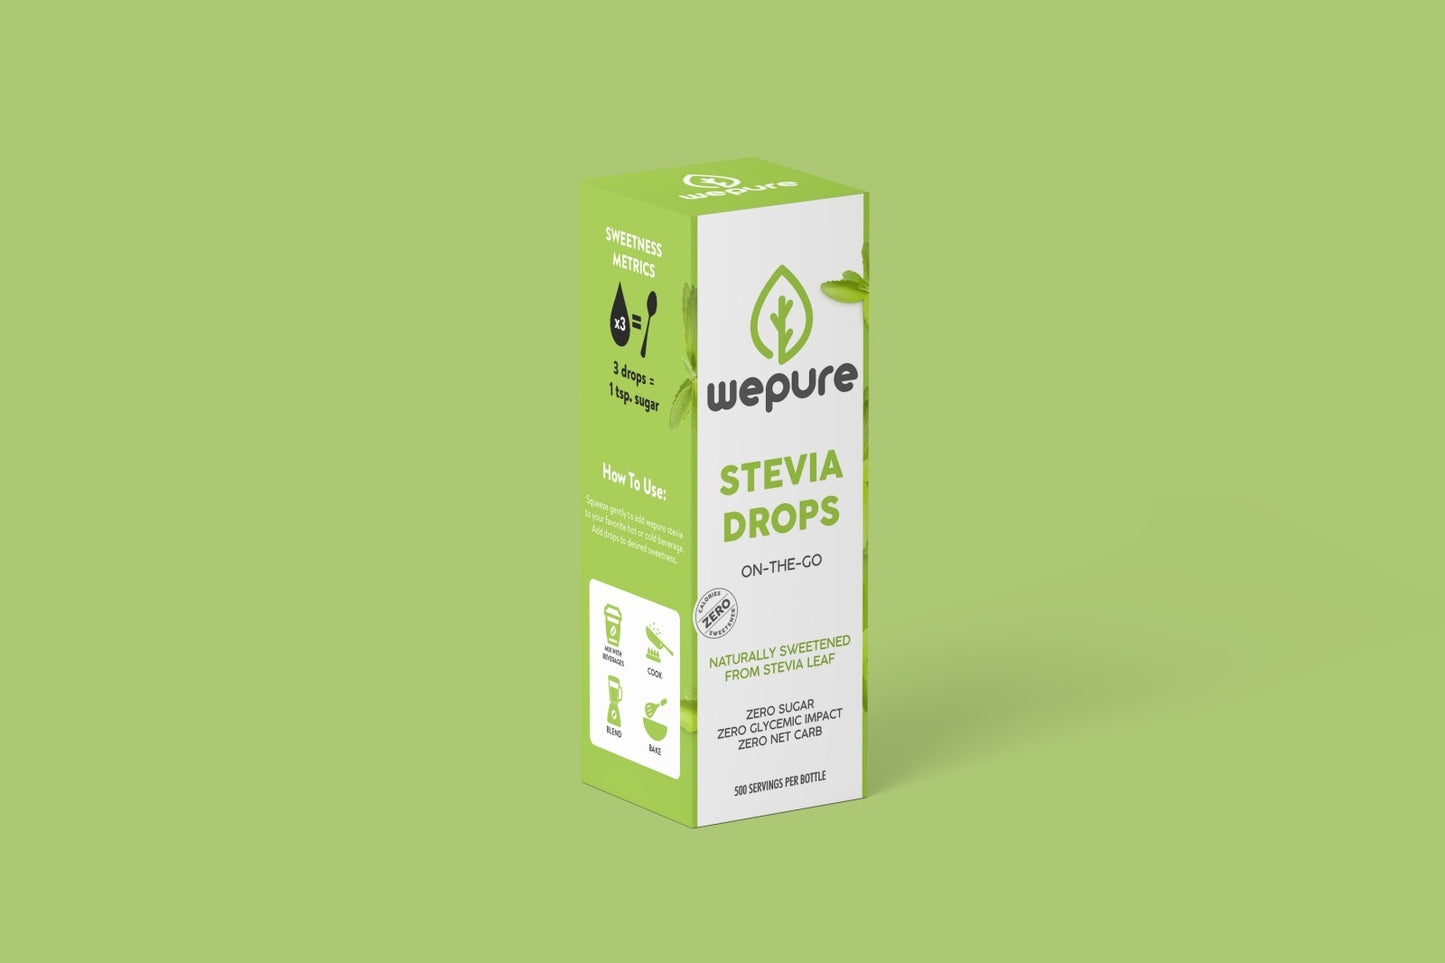 wepure stevia drops original flavor